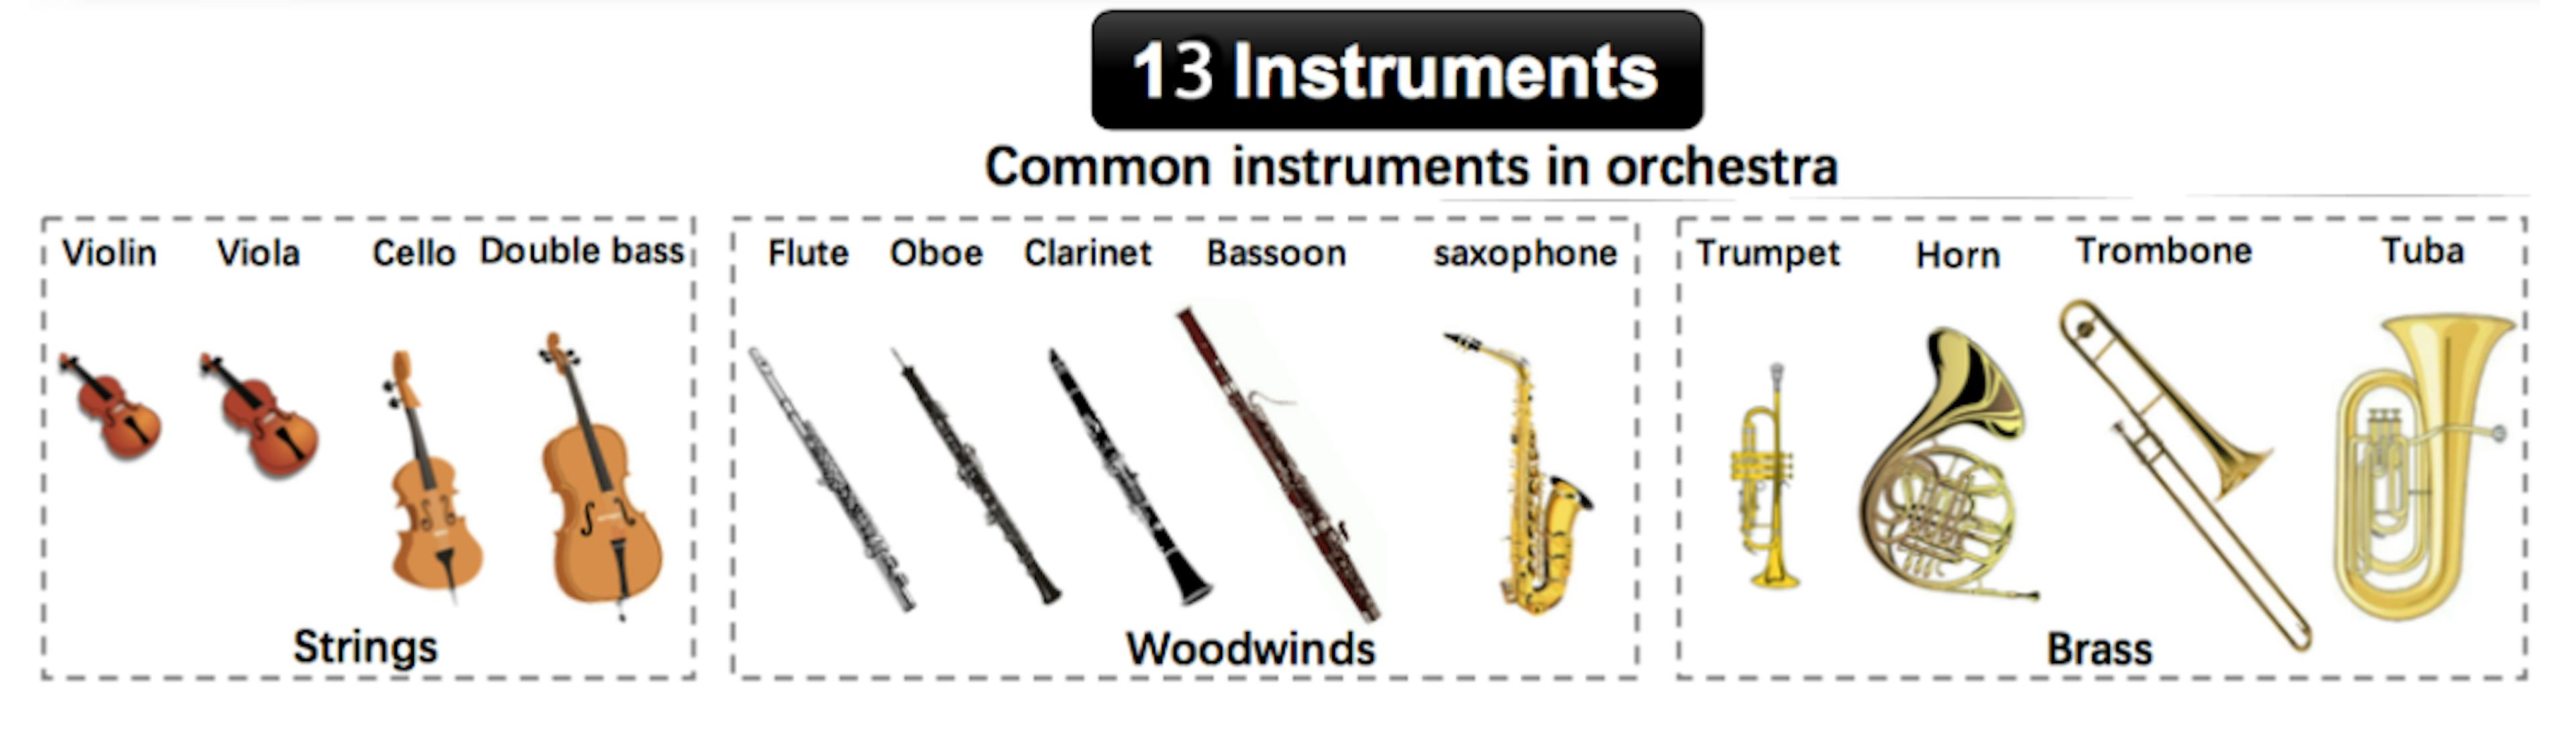 Abb. 1. Solos und URMP-Instrumentkategorien. Bild adaptiert aus [1].